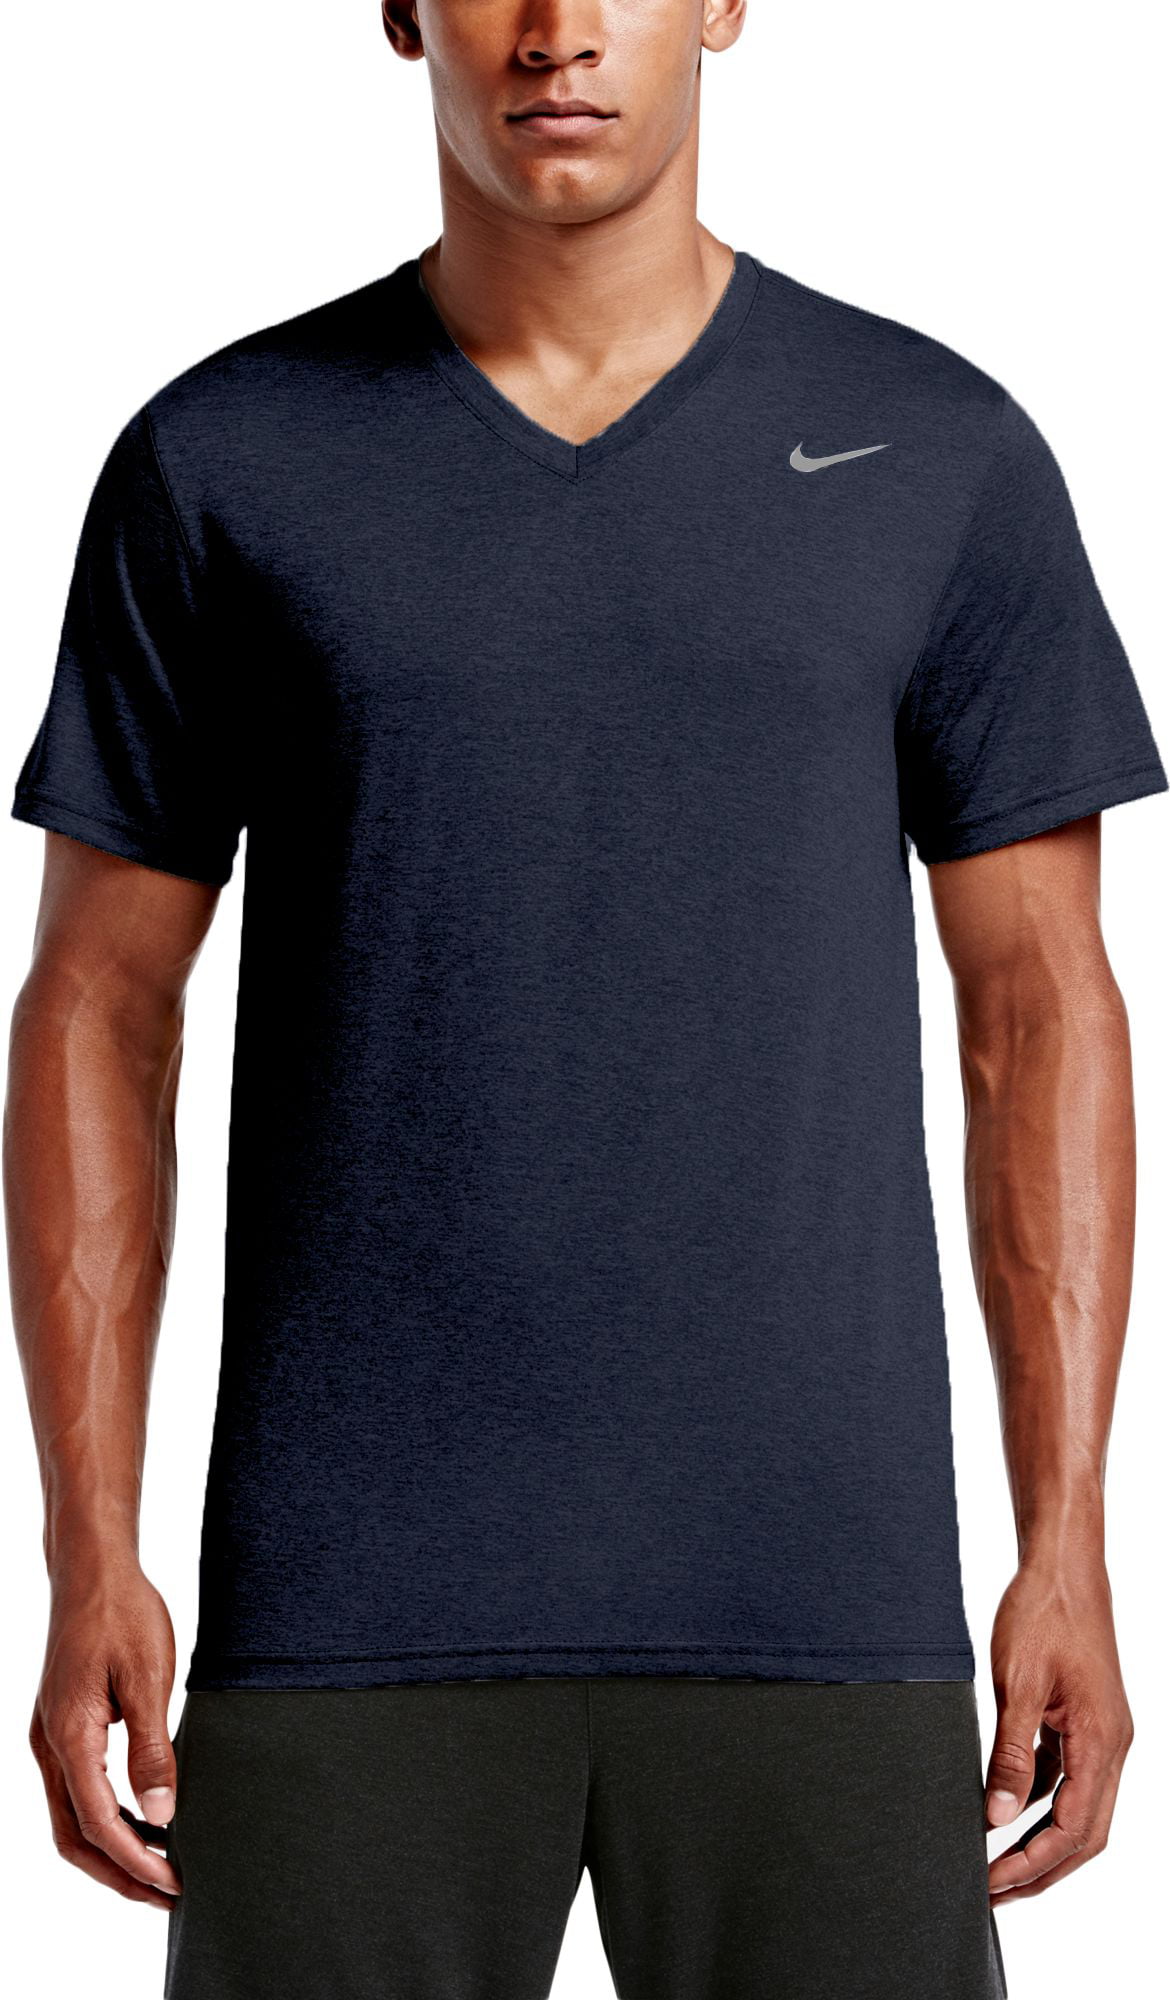 Nike - Nike Men's Legend 2.0 V-Neck T-Shirt - Walmart.com - Walmart.com